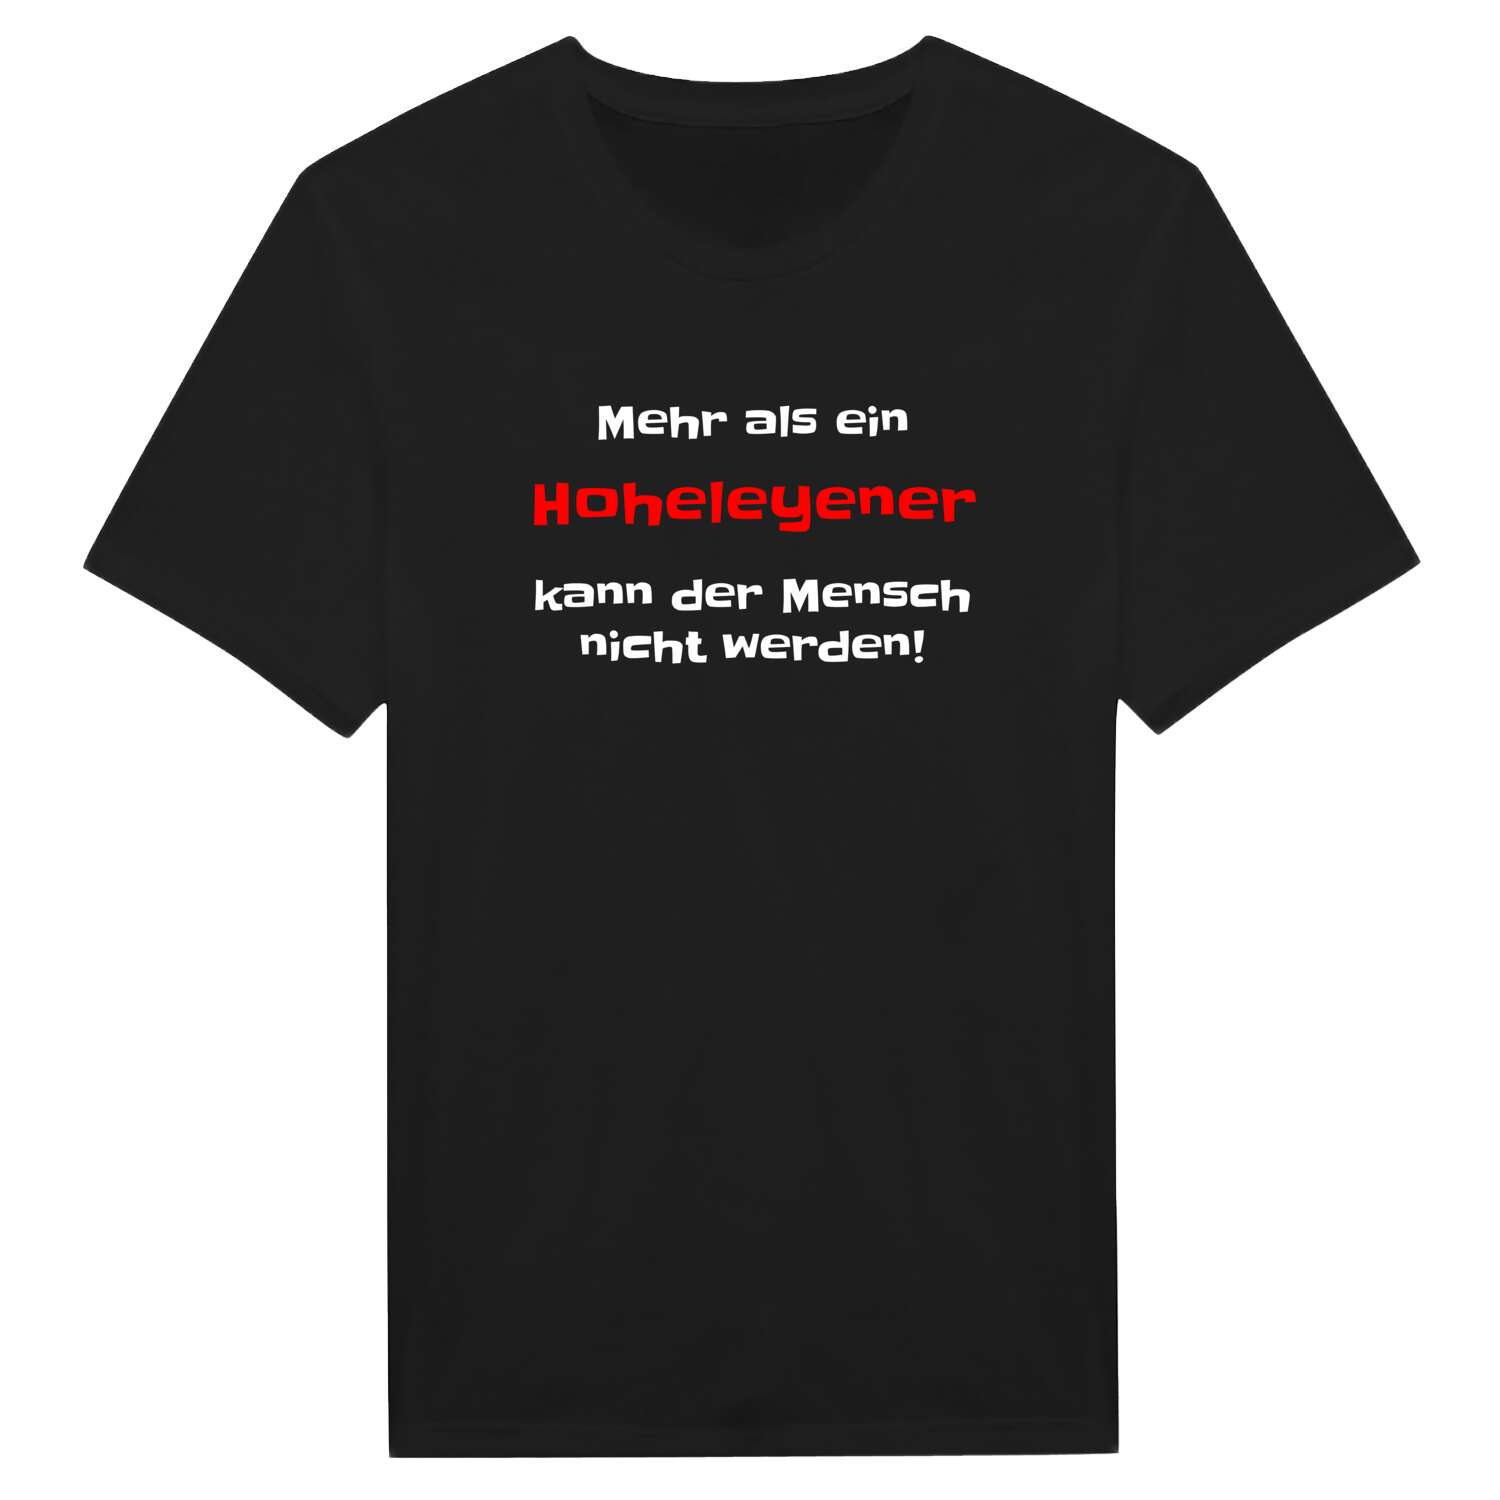 Hoheleye T-Shirt »Mehr als ein«